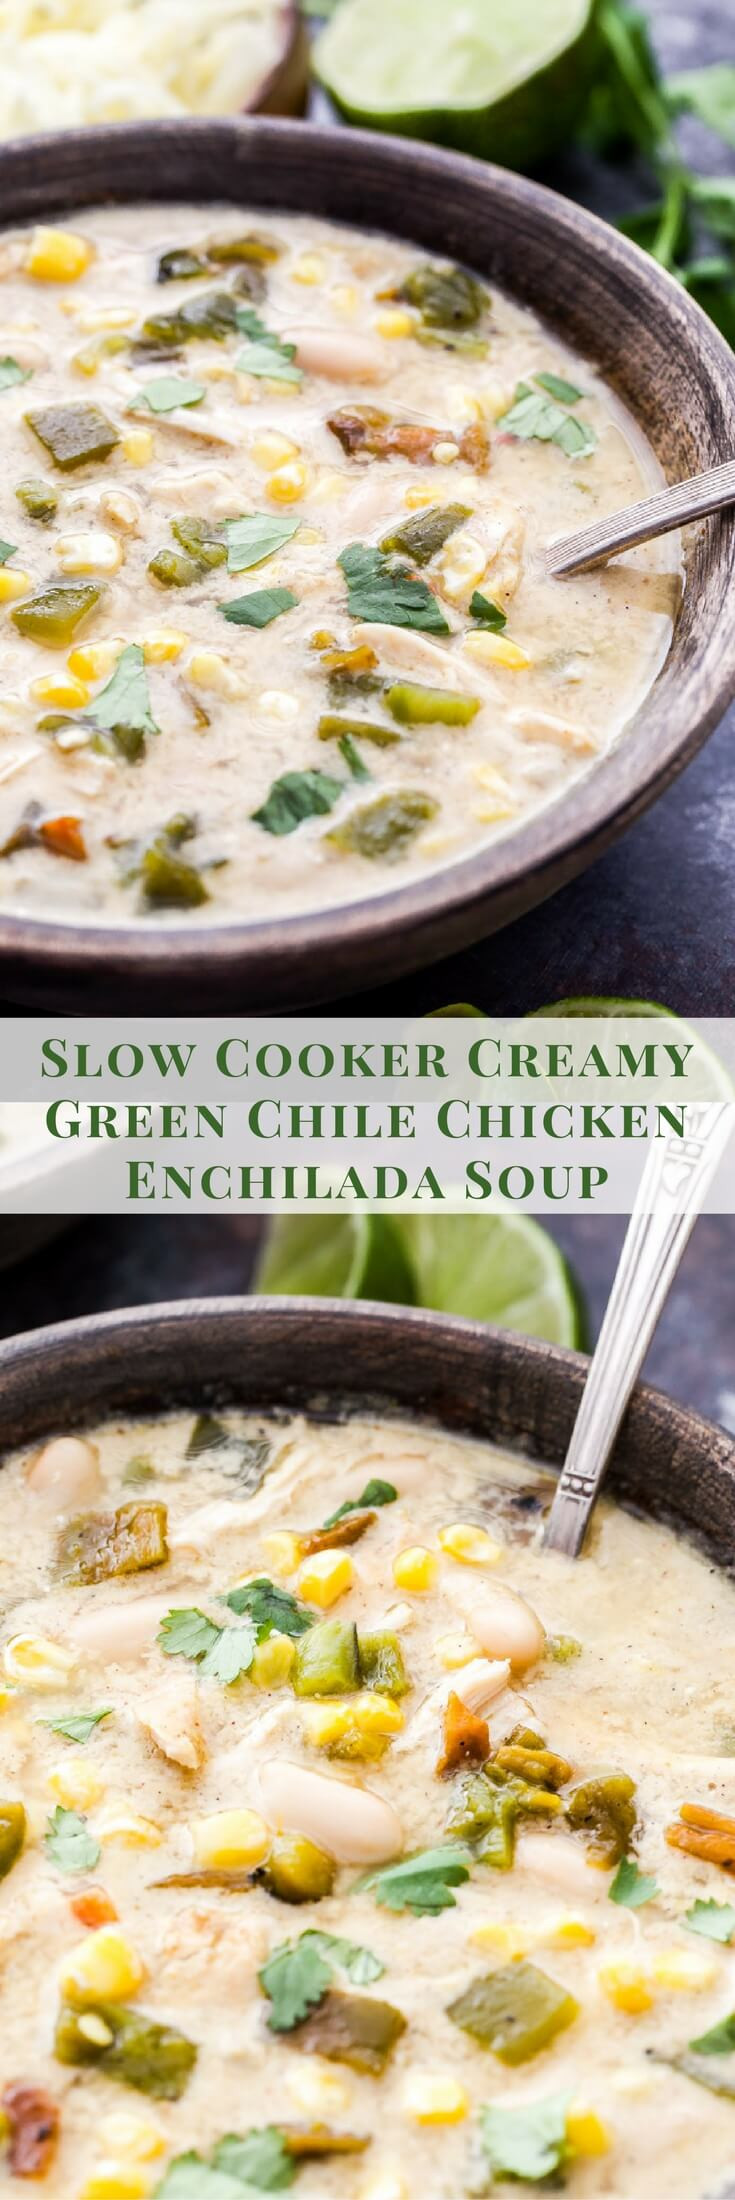 Green Chile Chicken Enchiladas Cream Cheese
 Slow Cooker Creamy Green Chile Chicken Enchilada Soup